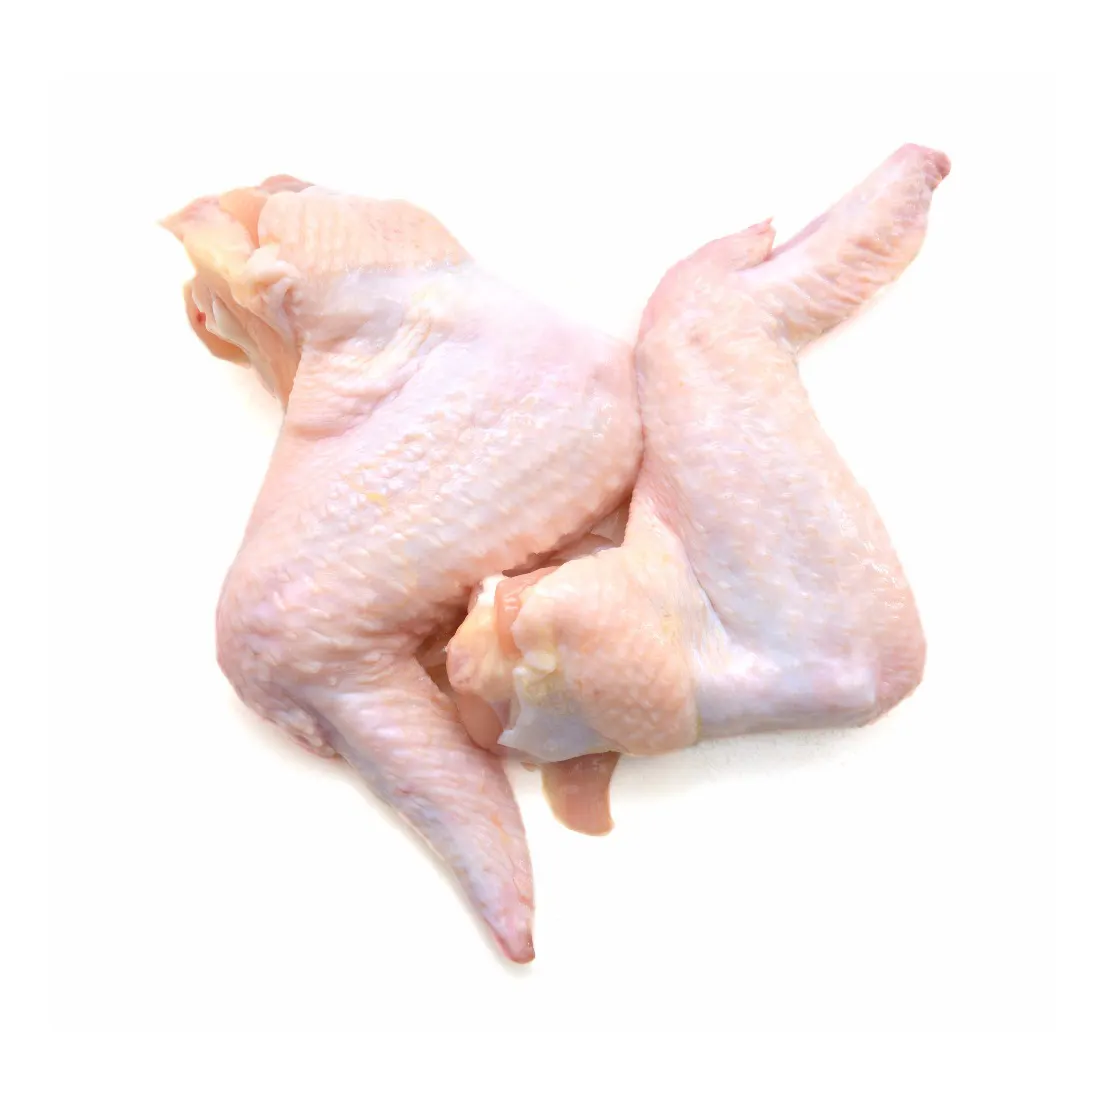 Gà Đông lạnh Halal Giữa Cánh chung/3 cánh gà chung, cánh gà 2 khớp/đầu cánh gà đông lạnh